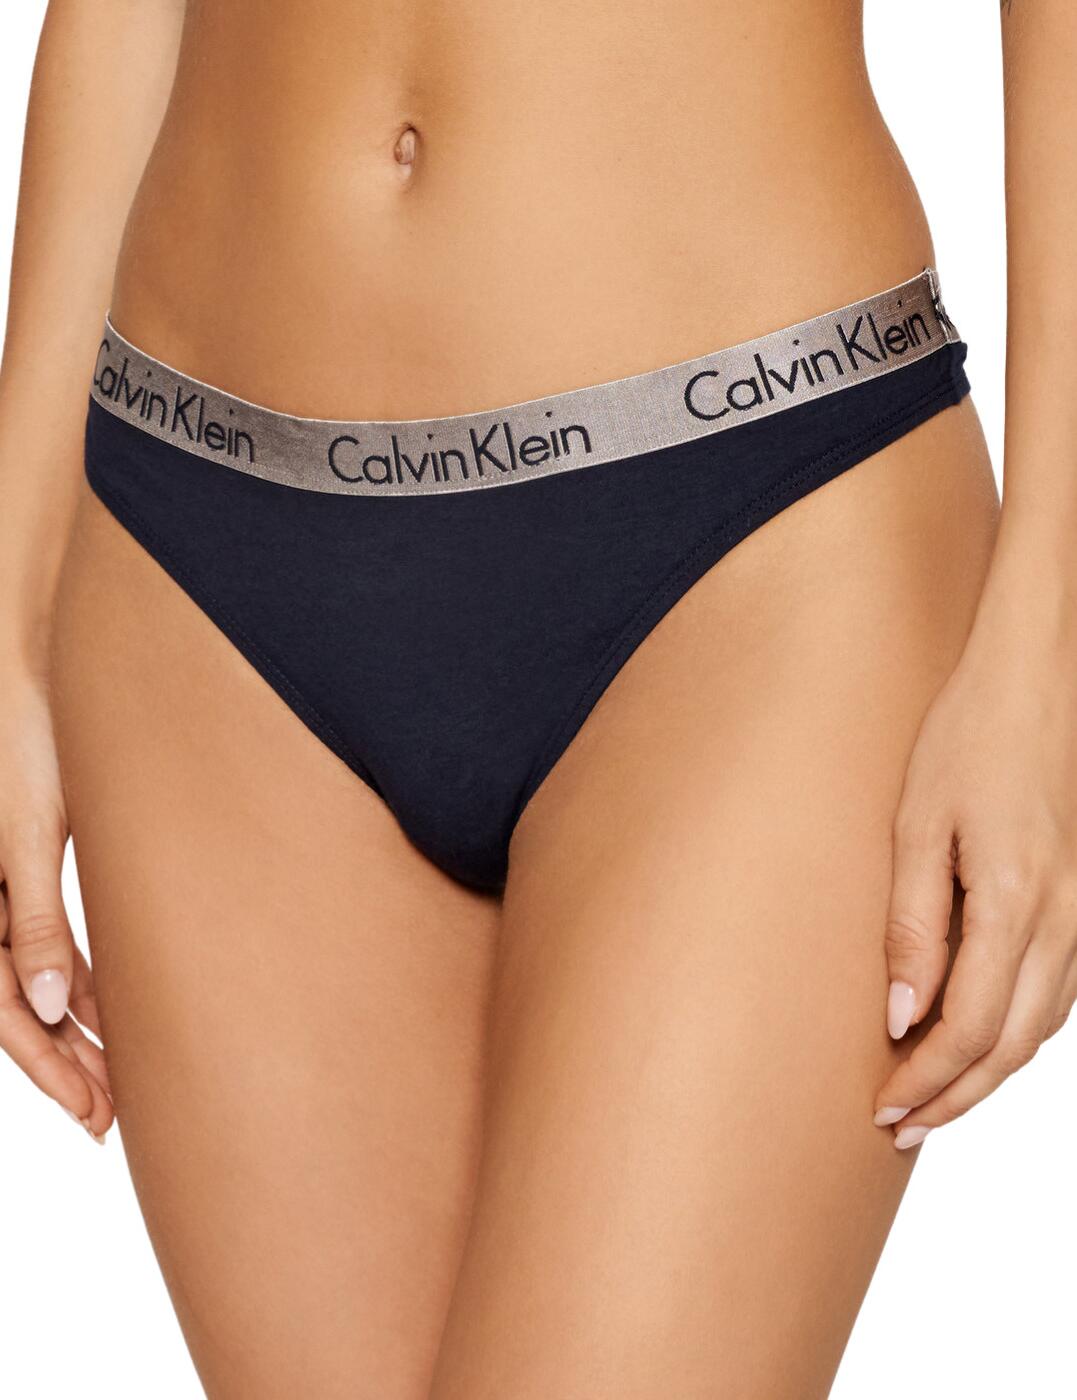 Calvin Klein Radiant Cotton Thong (3PK) White/Shoreline/Nymphs Thigh